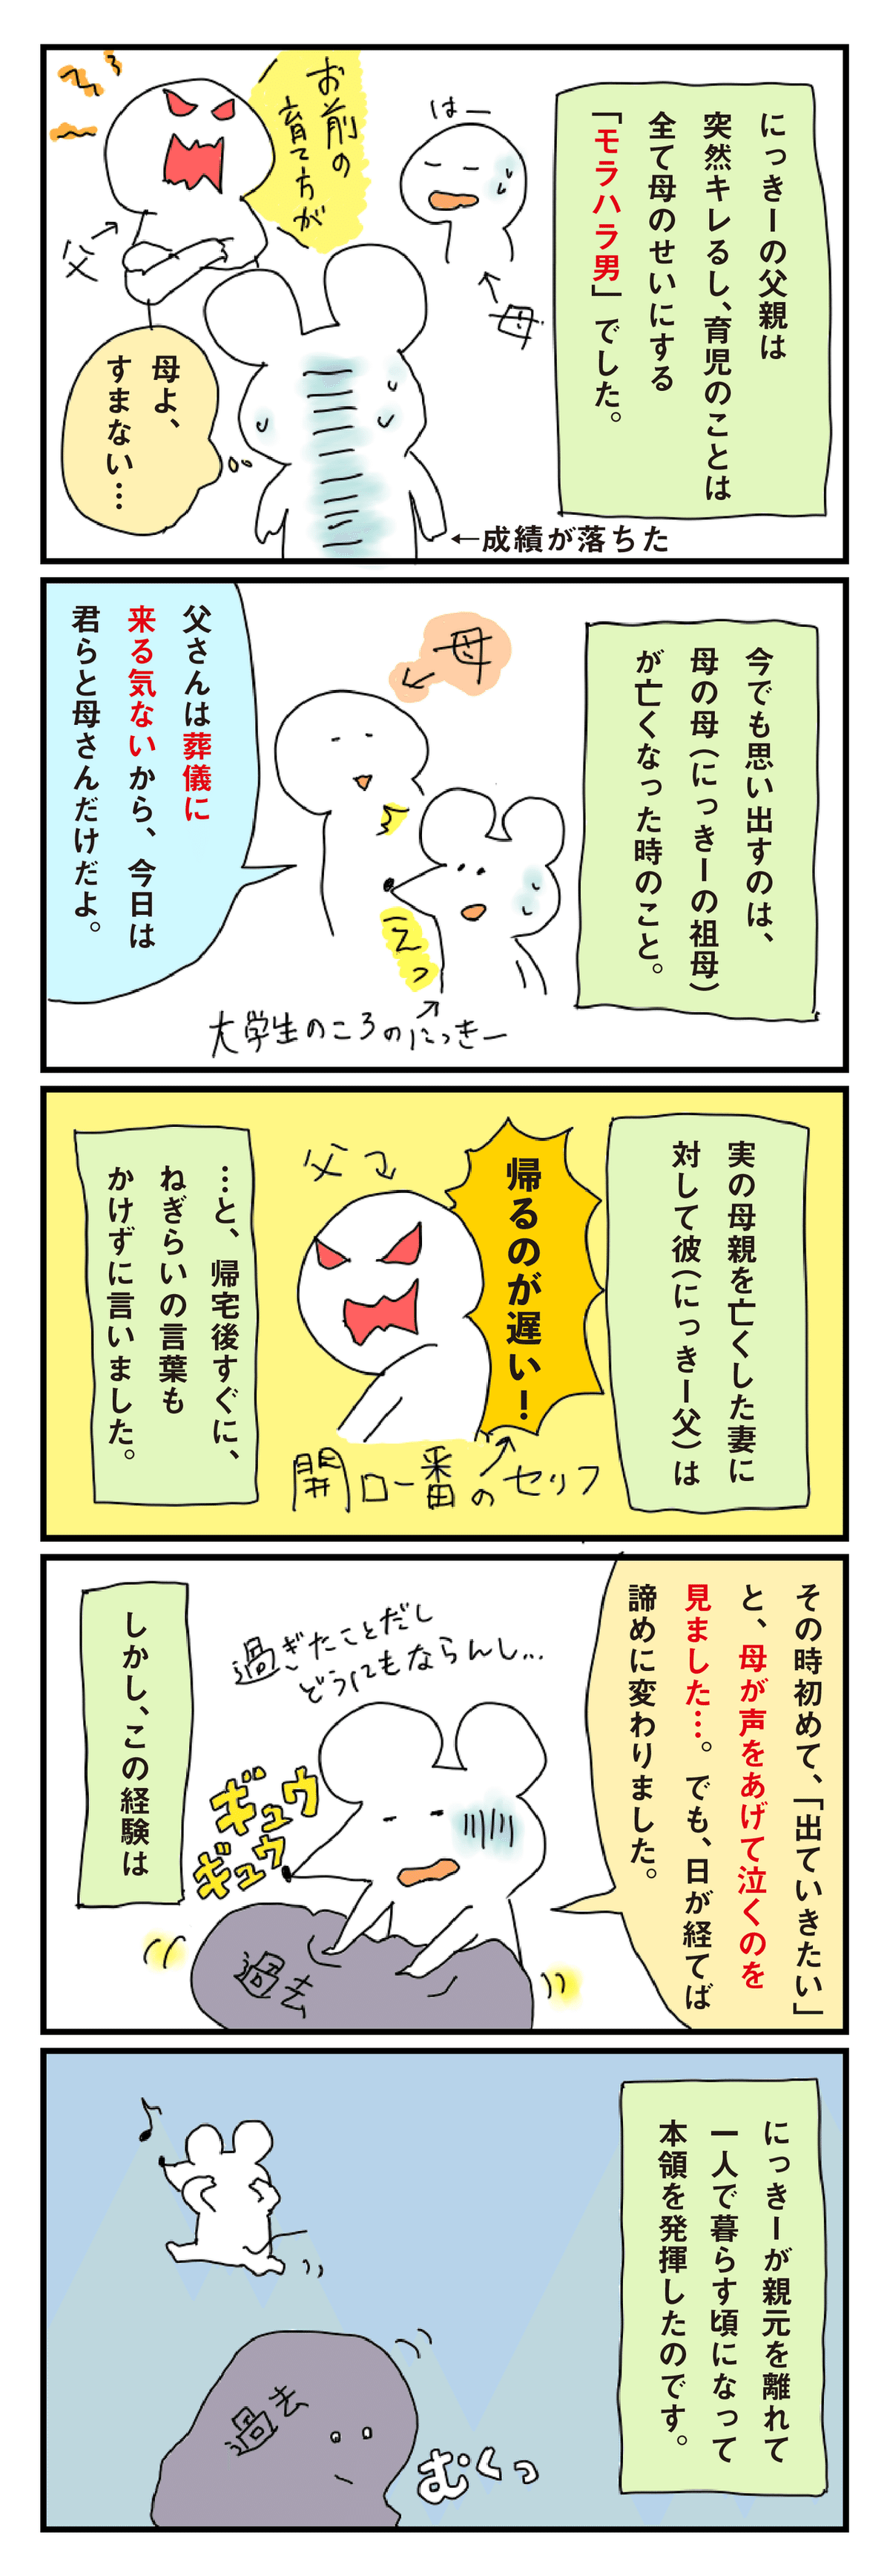 にっきー漫画_1_アートボード 1